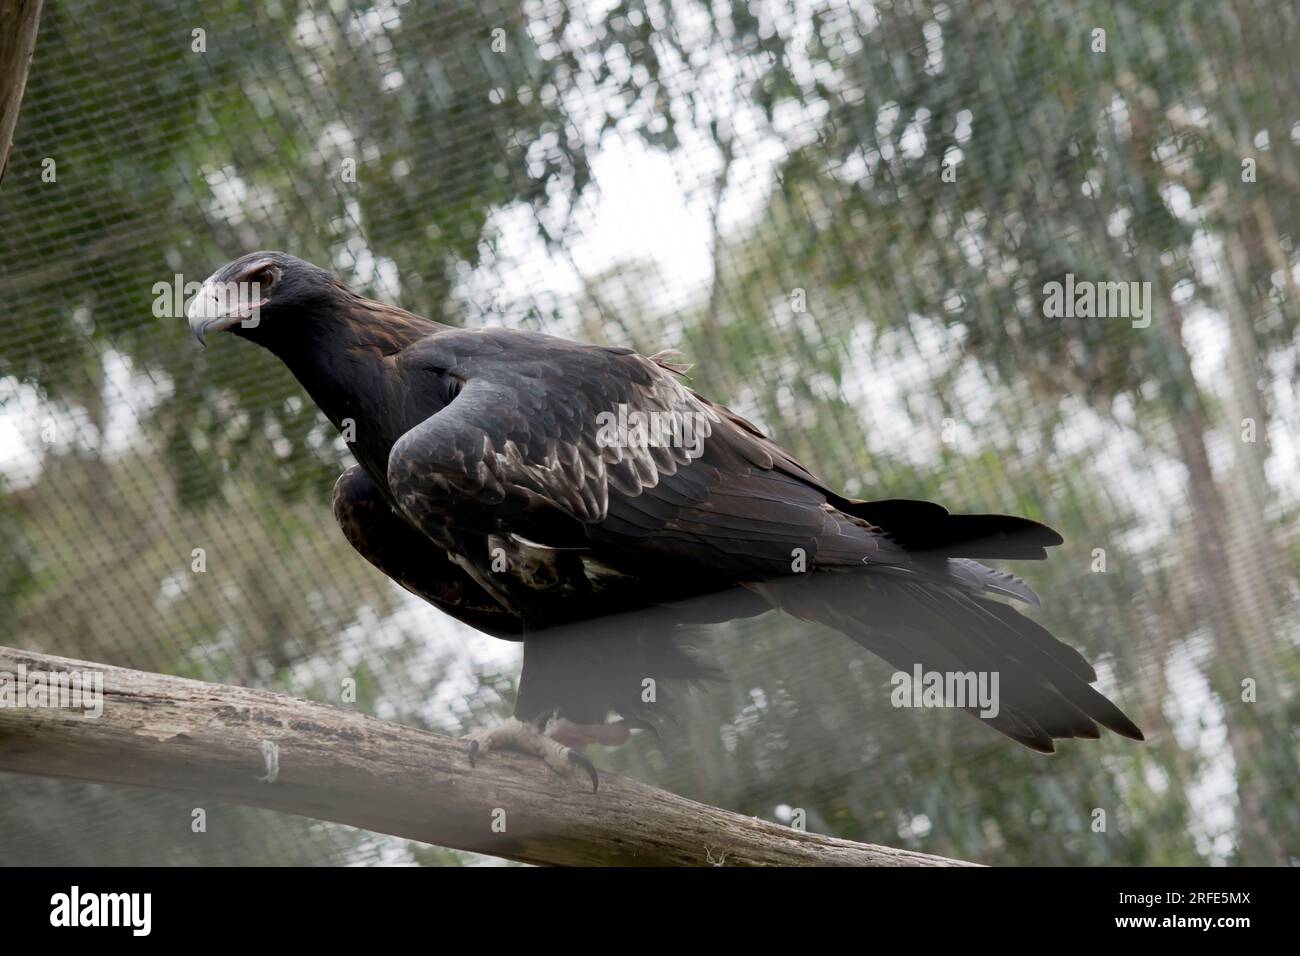 Der Keilschwanzadler hat eine dunkelbraun-schwarze Farbe. Der Schnabel des Adlers ist blass. Stockfoto